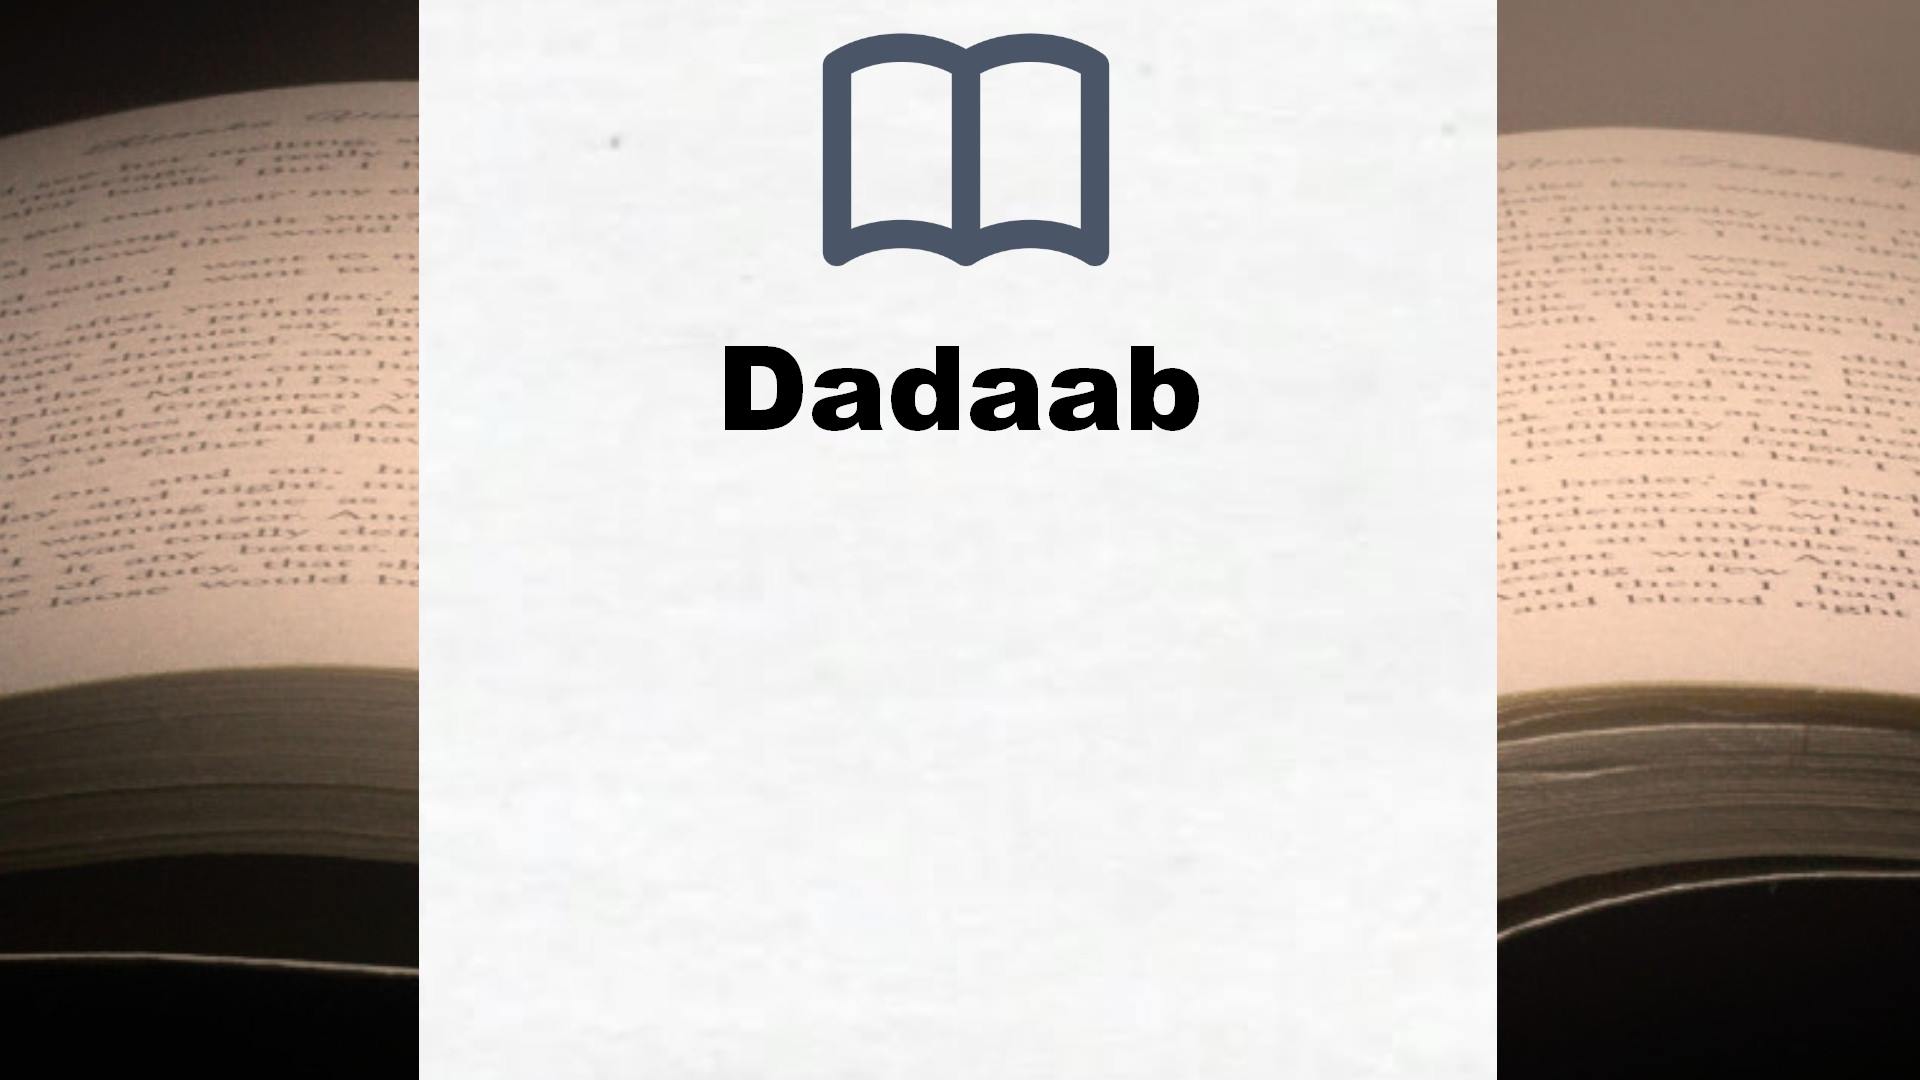 Bücher über Dadaab